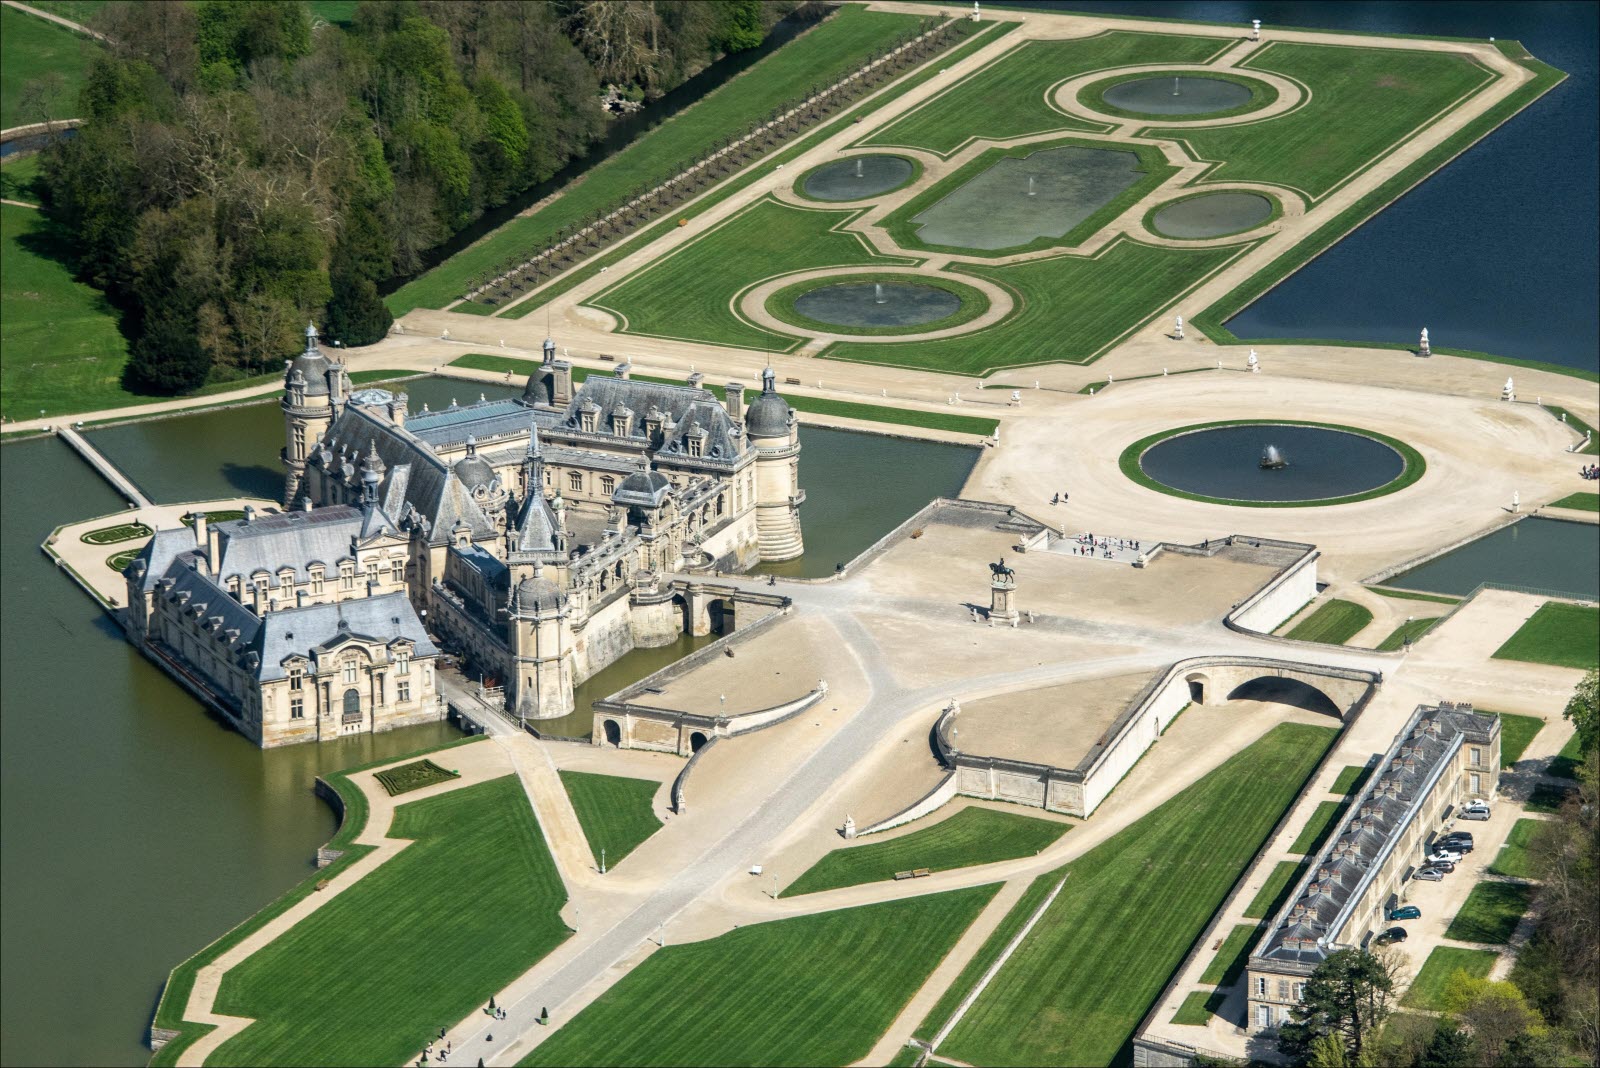 Château de Chantilly chantilly rares sont les chateaux ou l on peut ressentir l histoire d aussi pres photo dr 1605002910